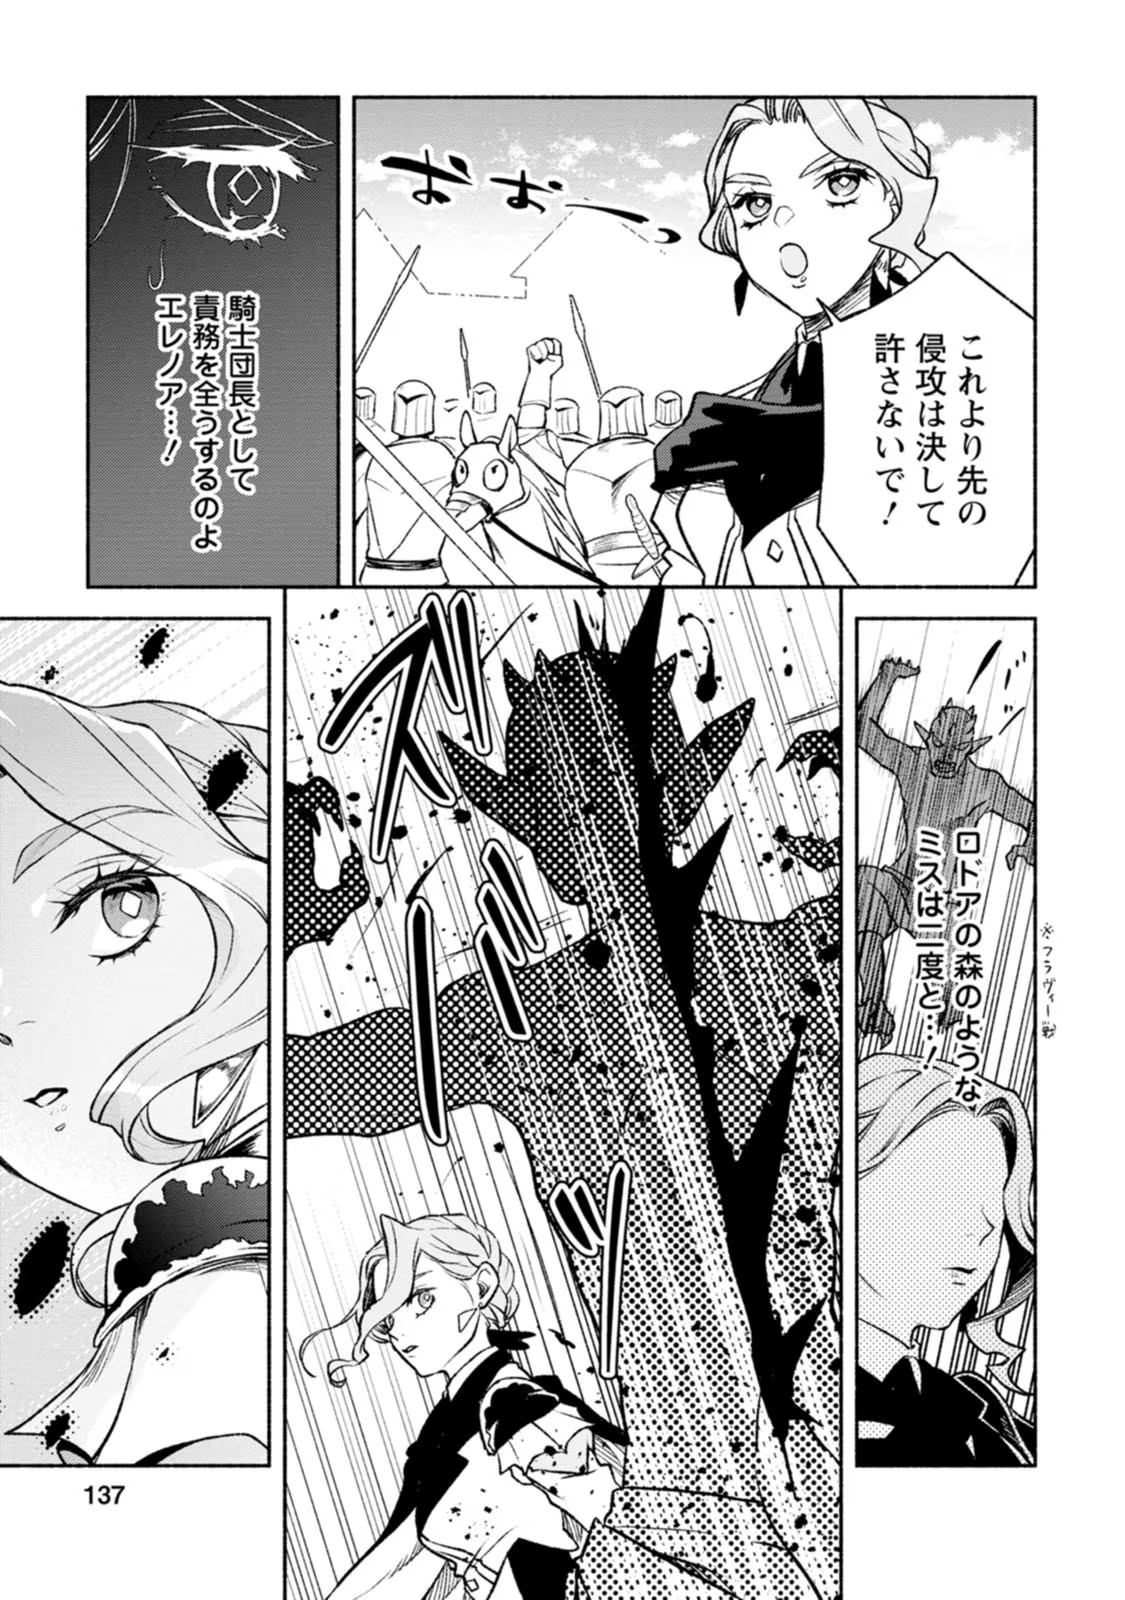 Sono Monban, Saikyou Nitsuki: Tsuihou Sareta Bougyo Ryoku 9999 no Senshi, Outo no Monban Toshite Musou Suru - Chapter 30 - Page 3